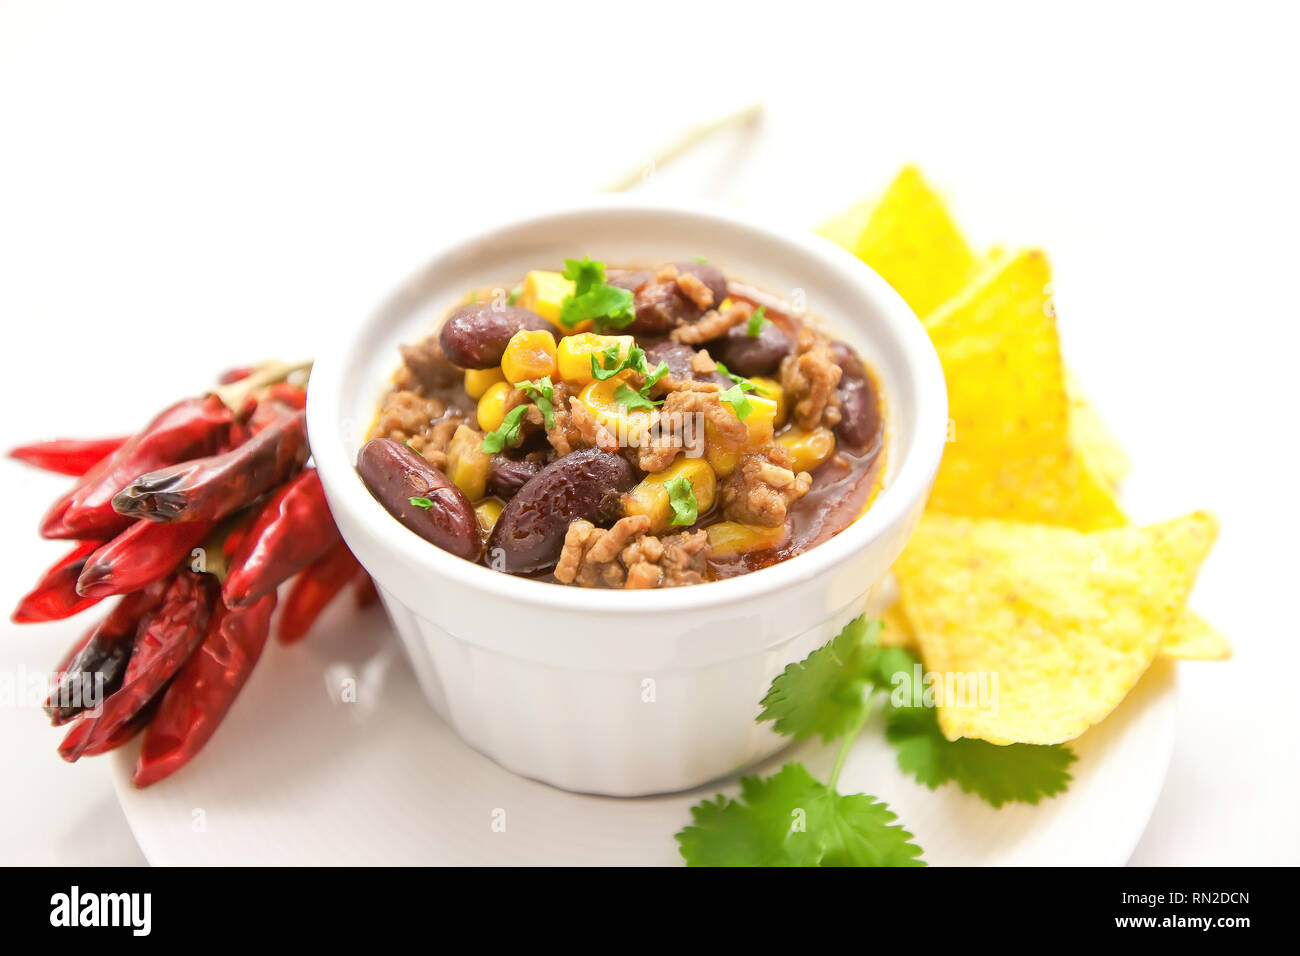 Chili con carne dans une cuvette d'argile blanche sur un fond lumineux- plat traditionnel de la cuisine mexicaine. Banque D'Images